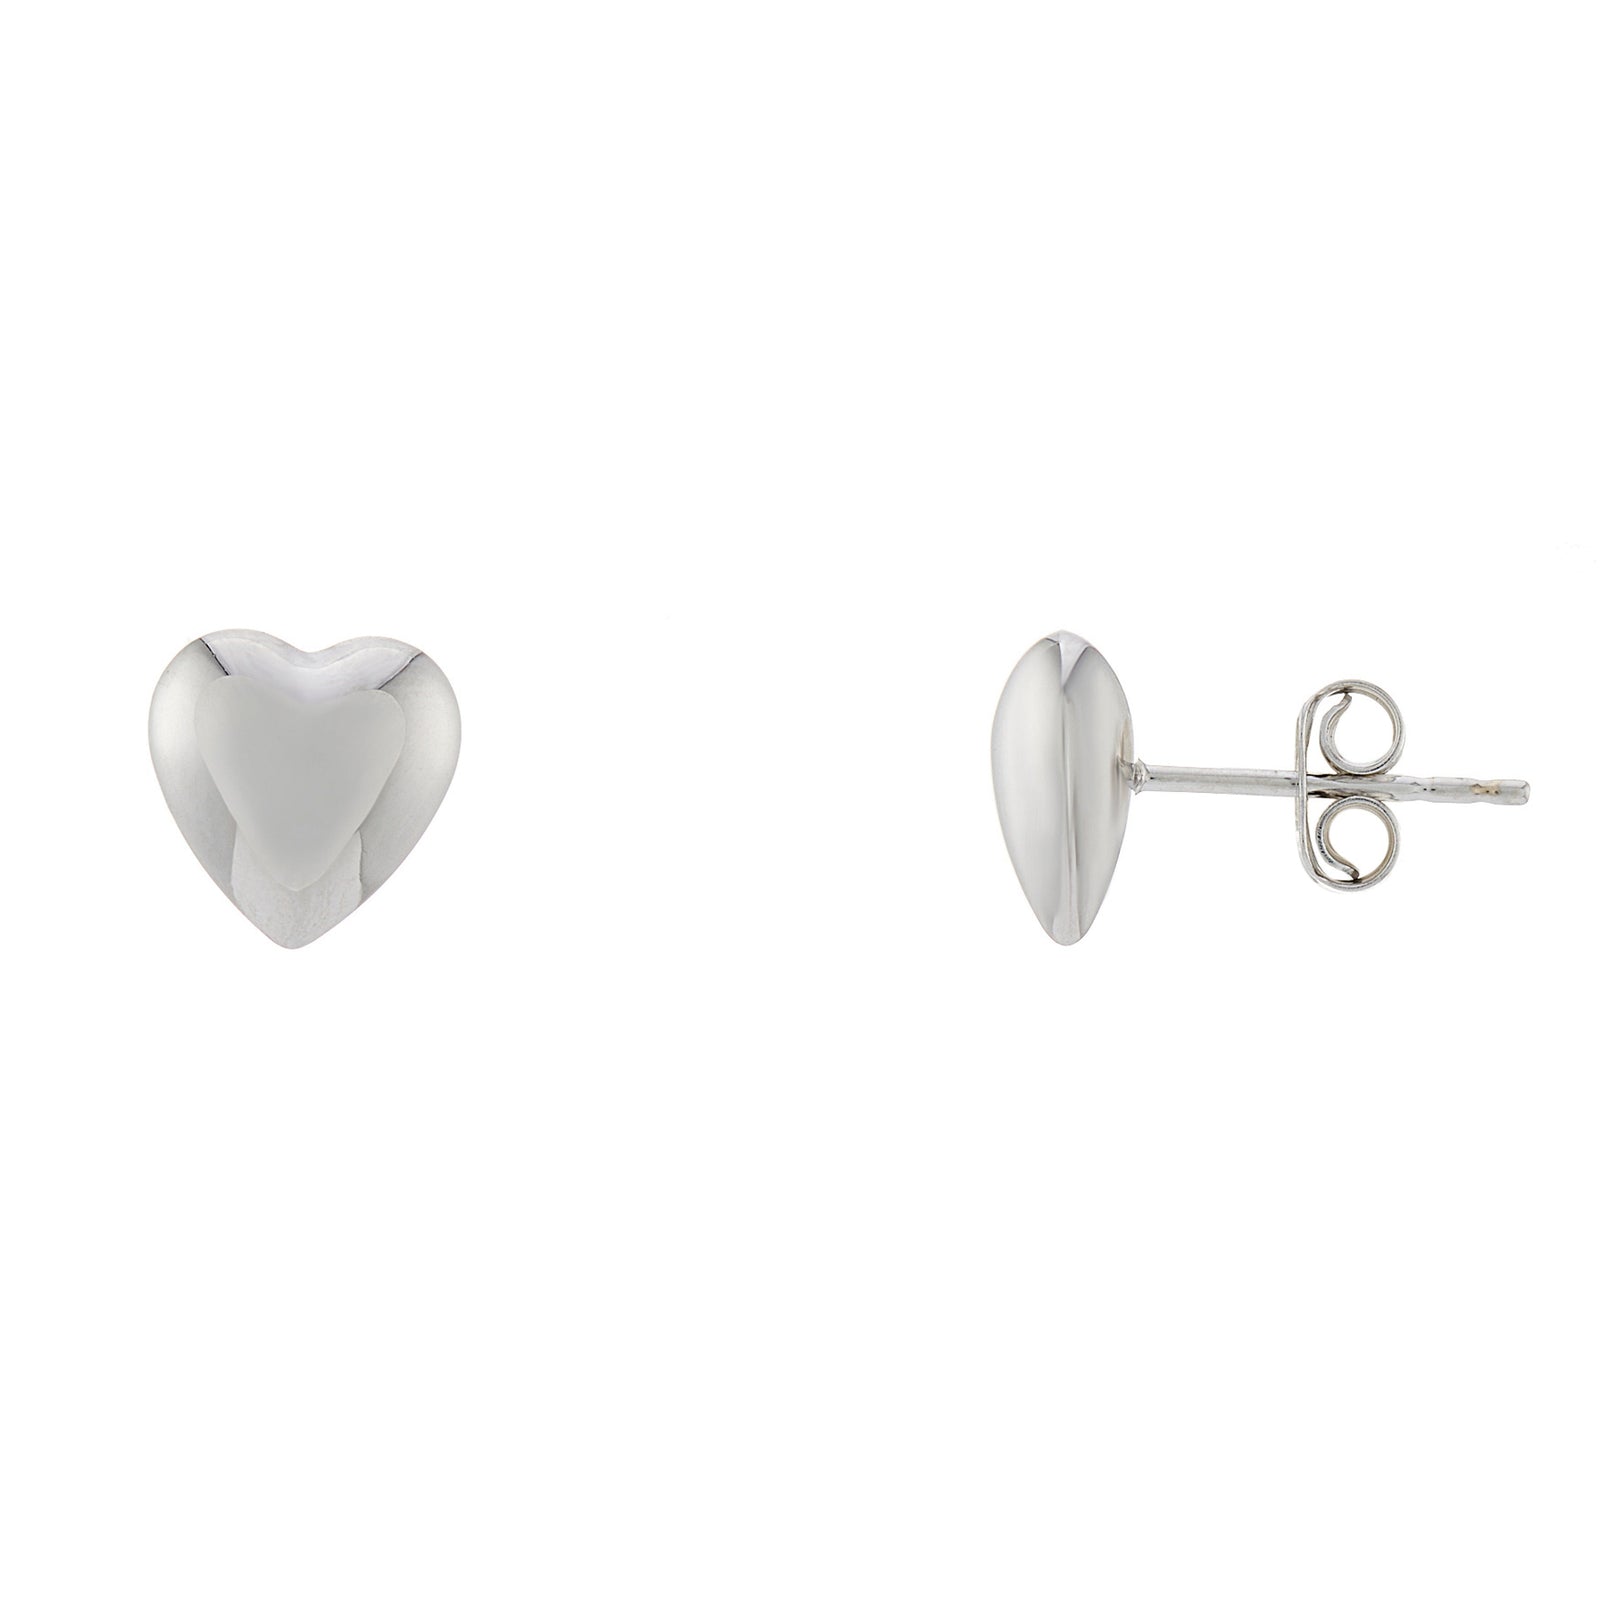 9ct white gold 9mm plain heart stud earrings